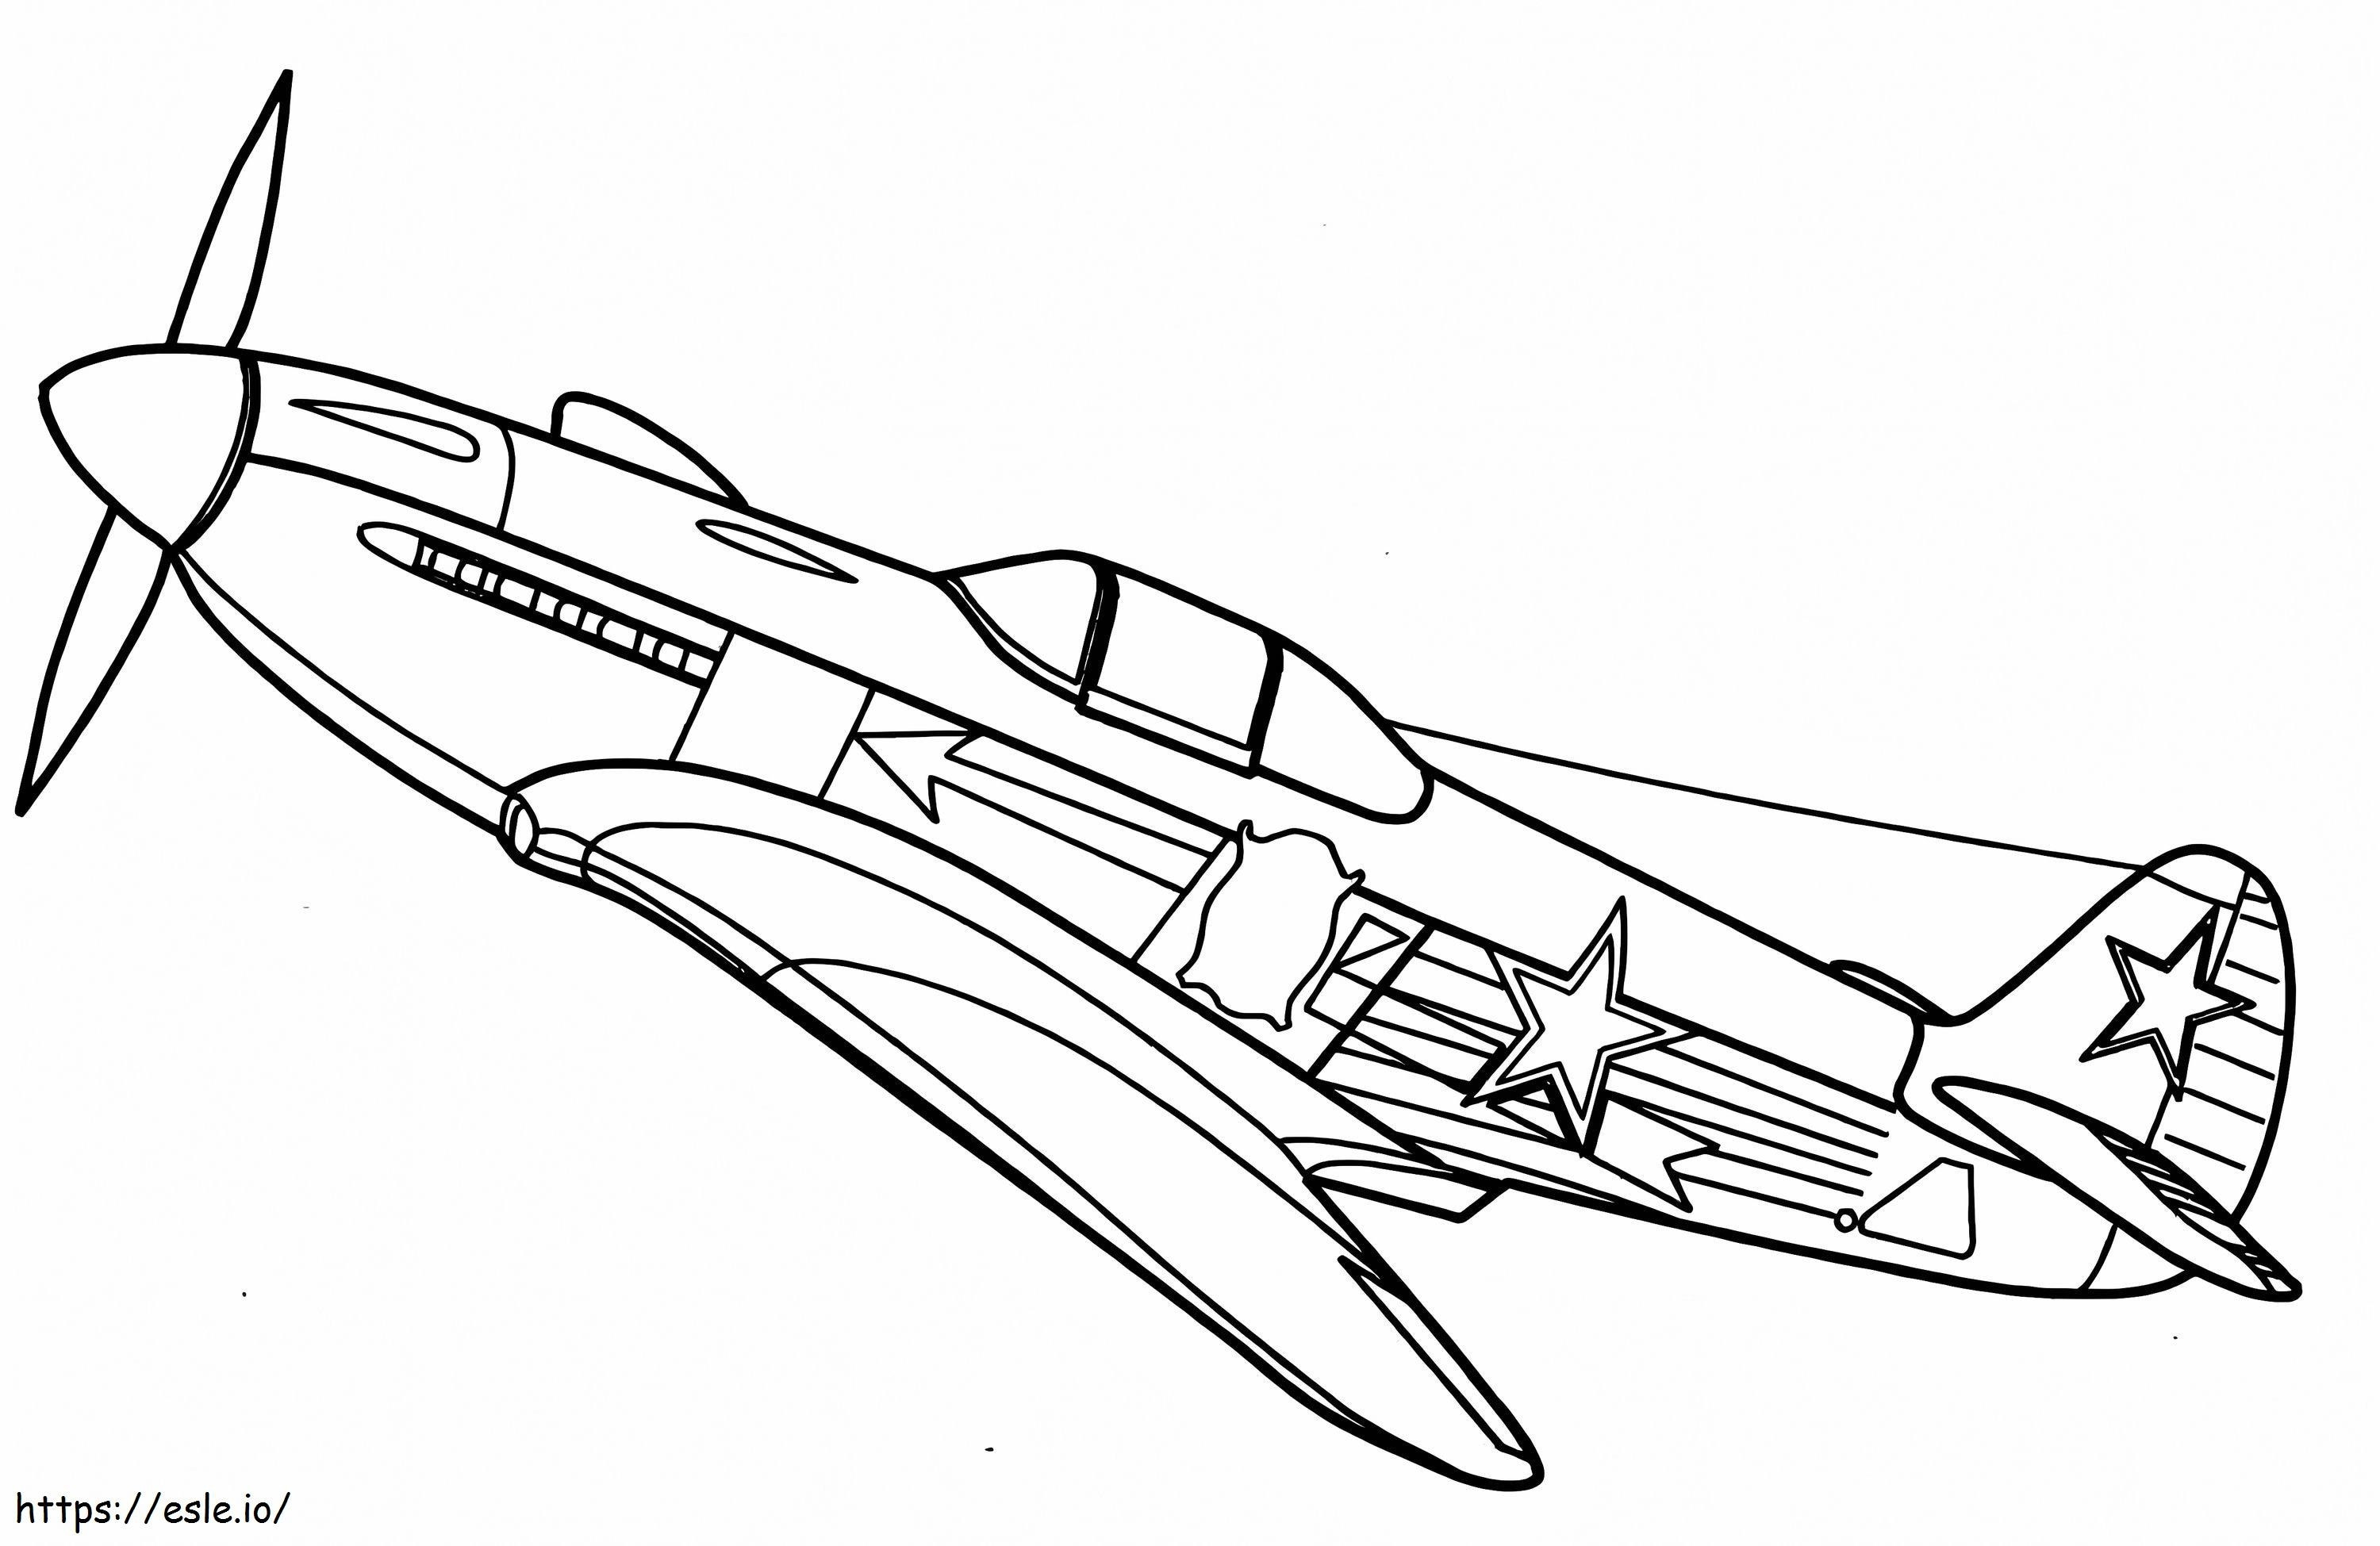 Yakovlev Yak 3 Fighter Jet coloring page